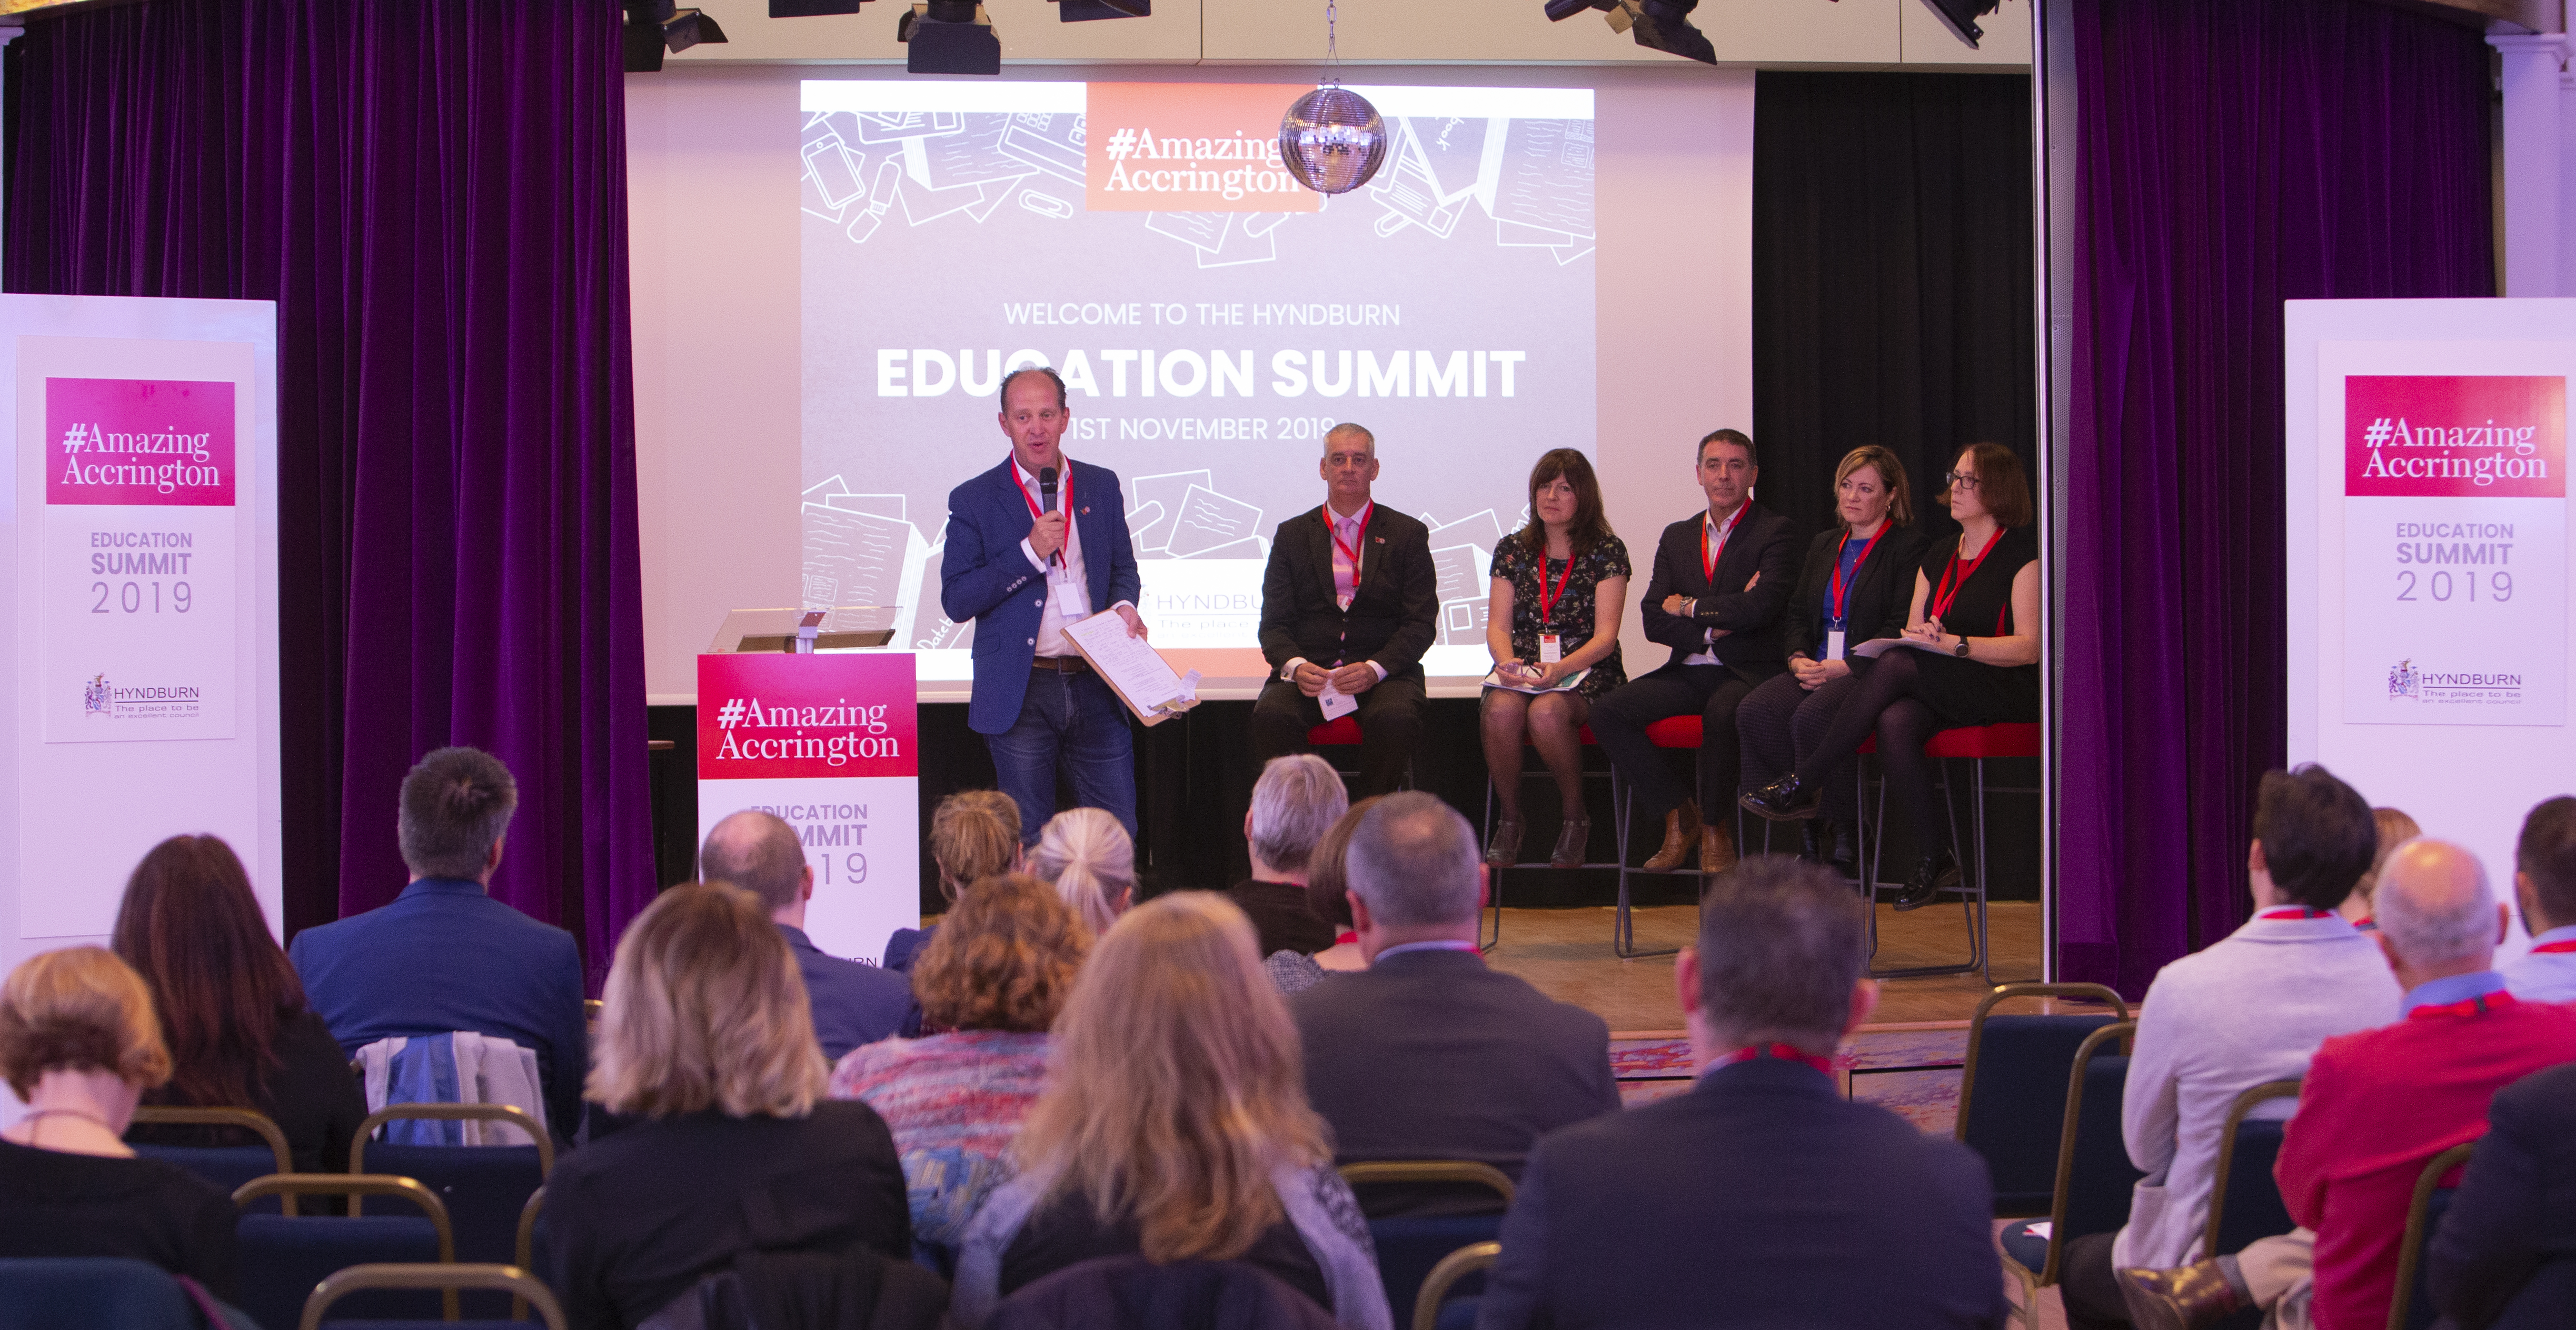 Hyndburn Education Summit 2019